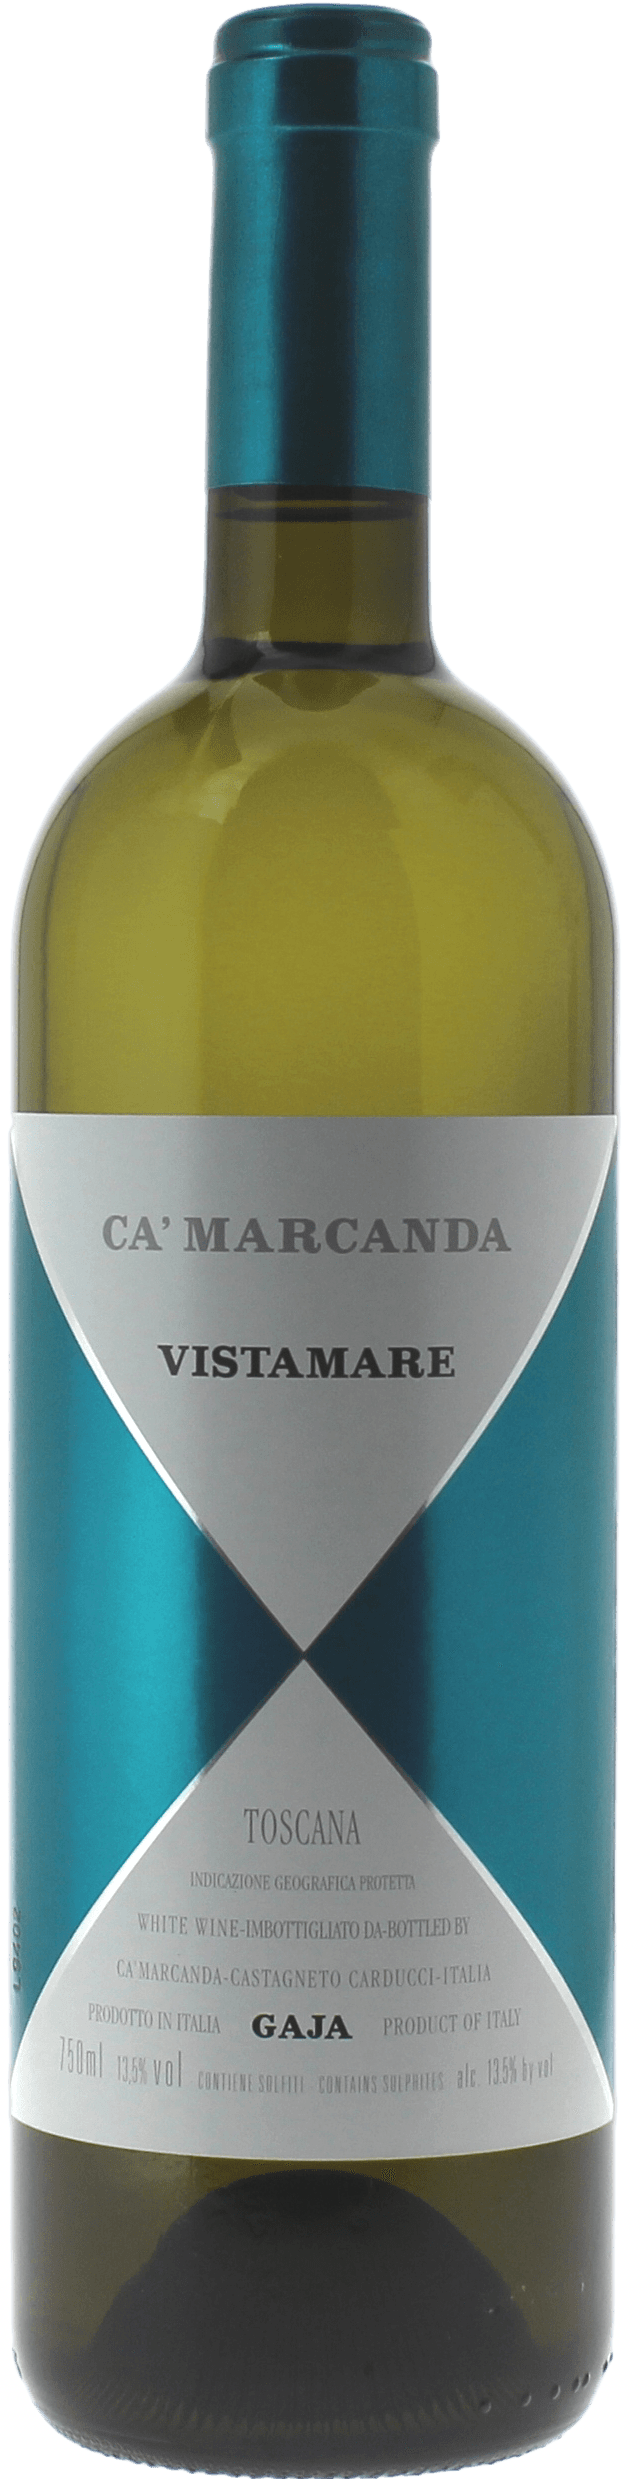 Gaja - vistamare assemblage -toscane 2018  , Vin italien